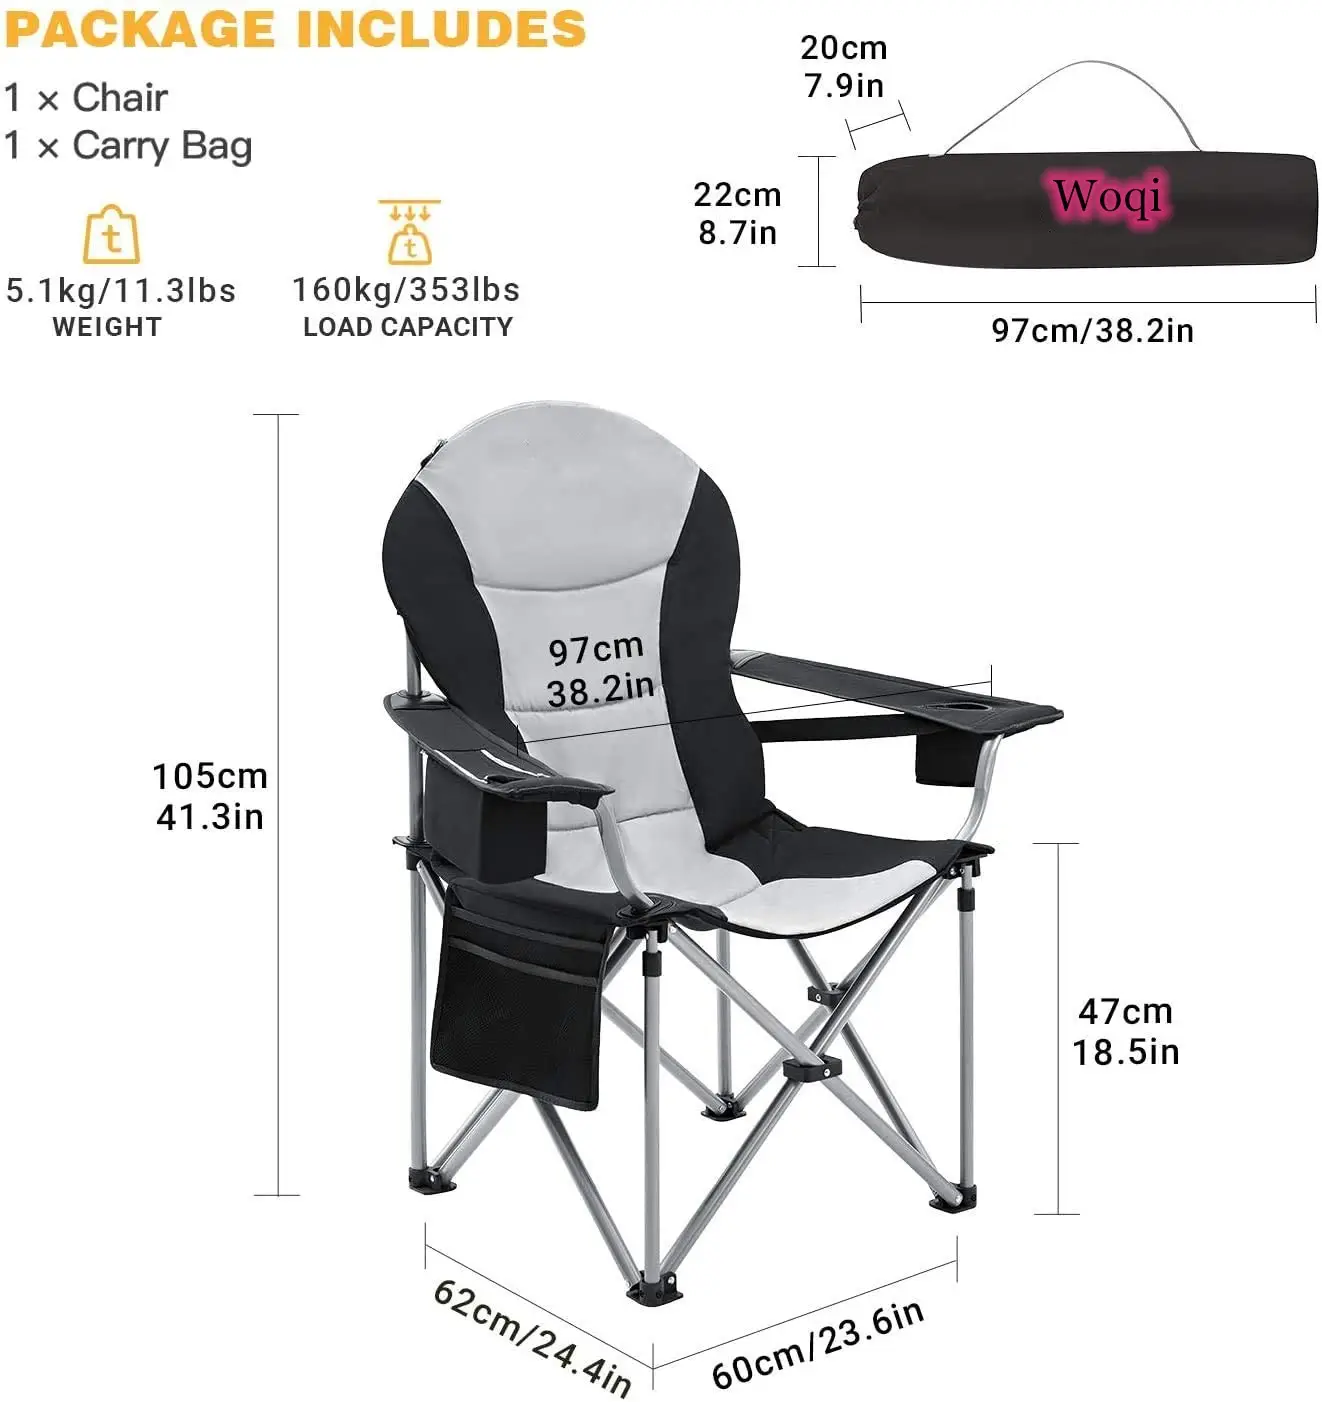 Woqi 2021 Hot popular Outdoor Recliner folding chair Lightweight Folding Ultralight camping Beach Chair